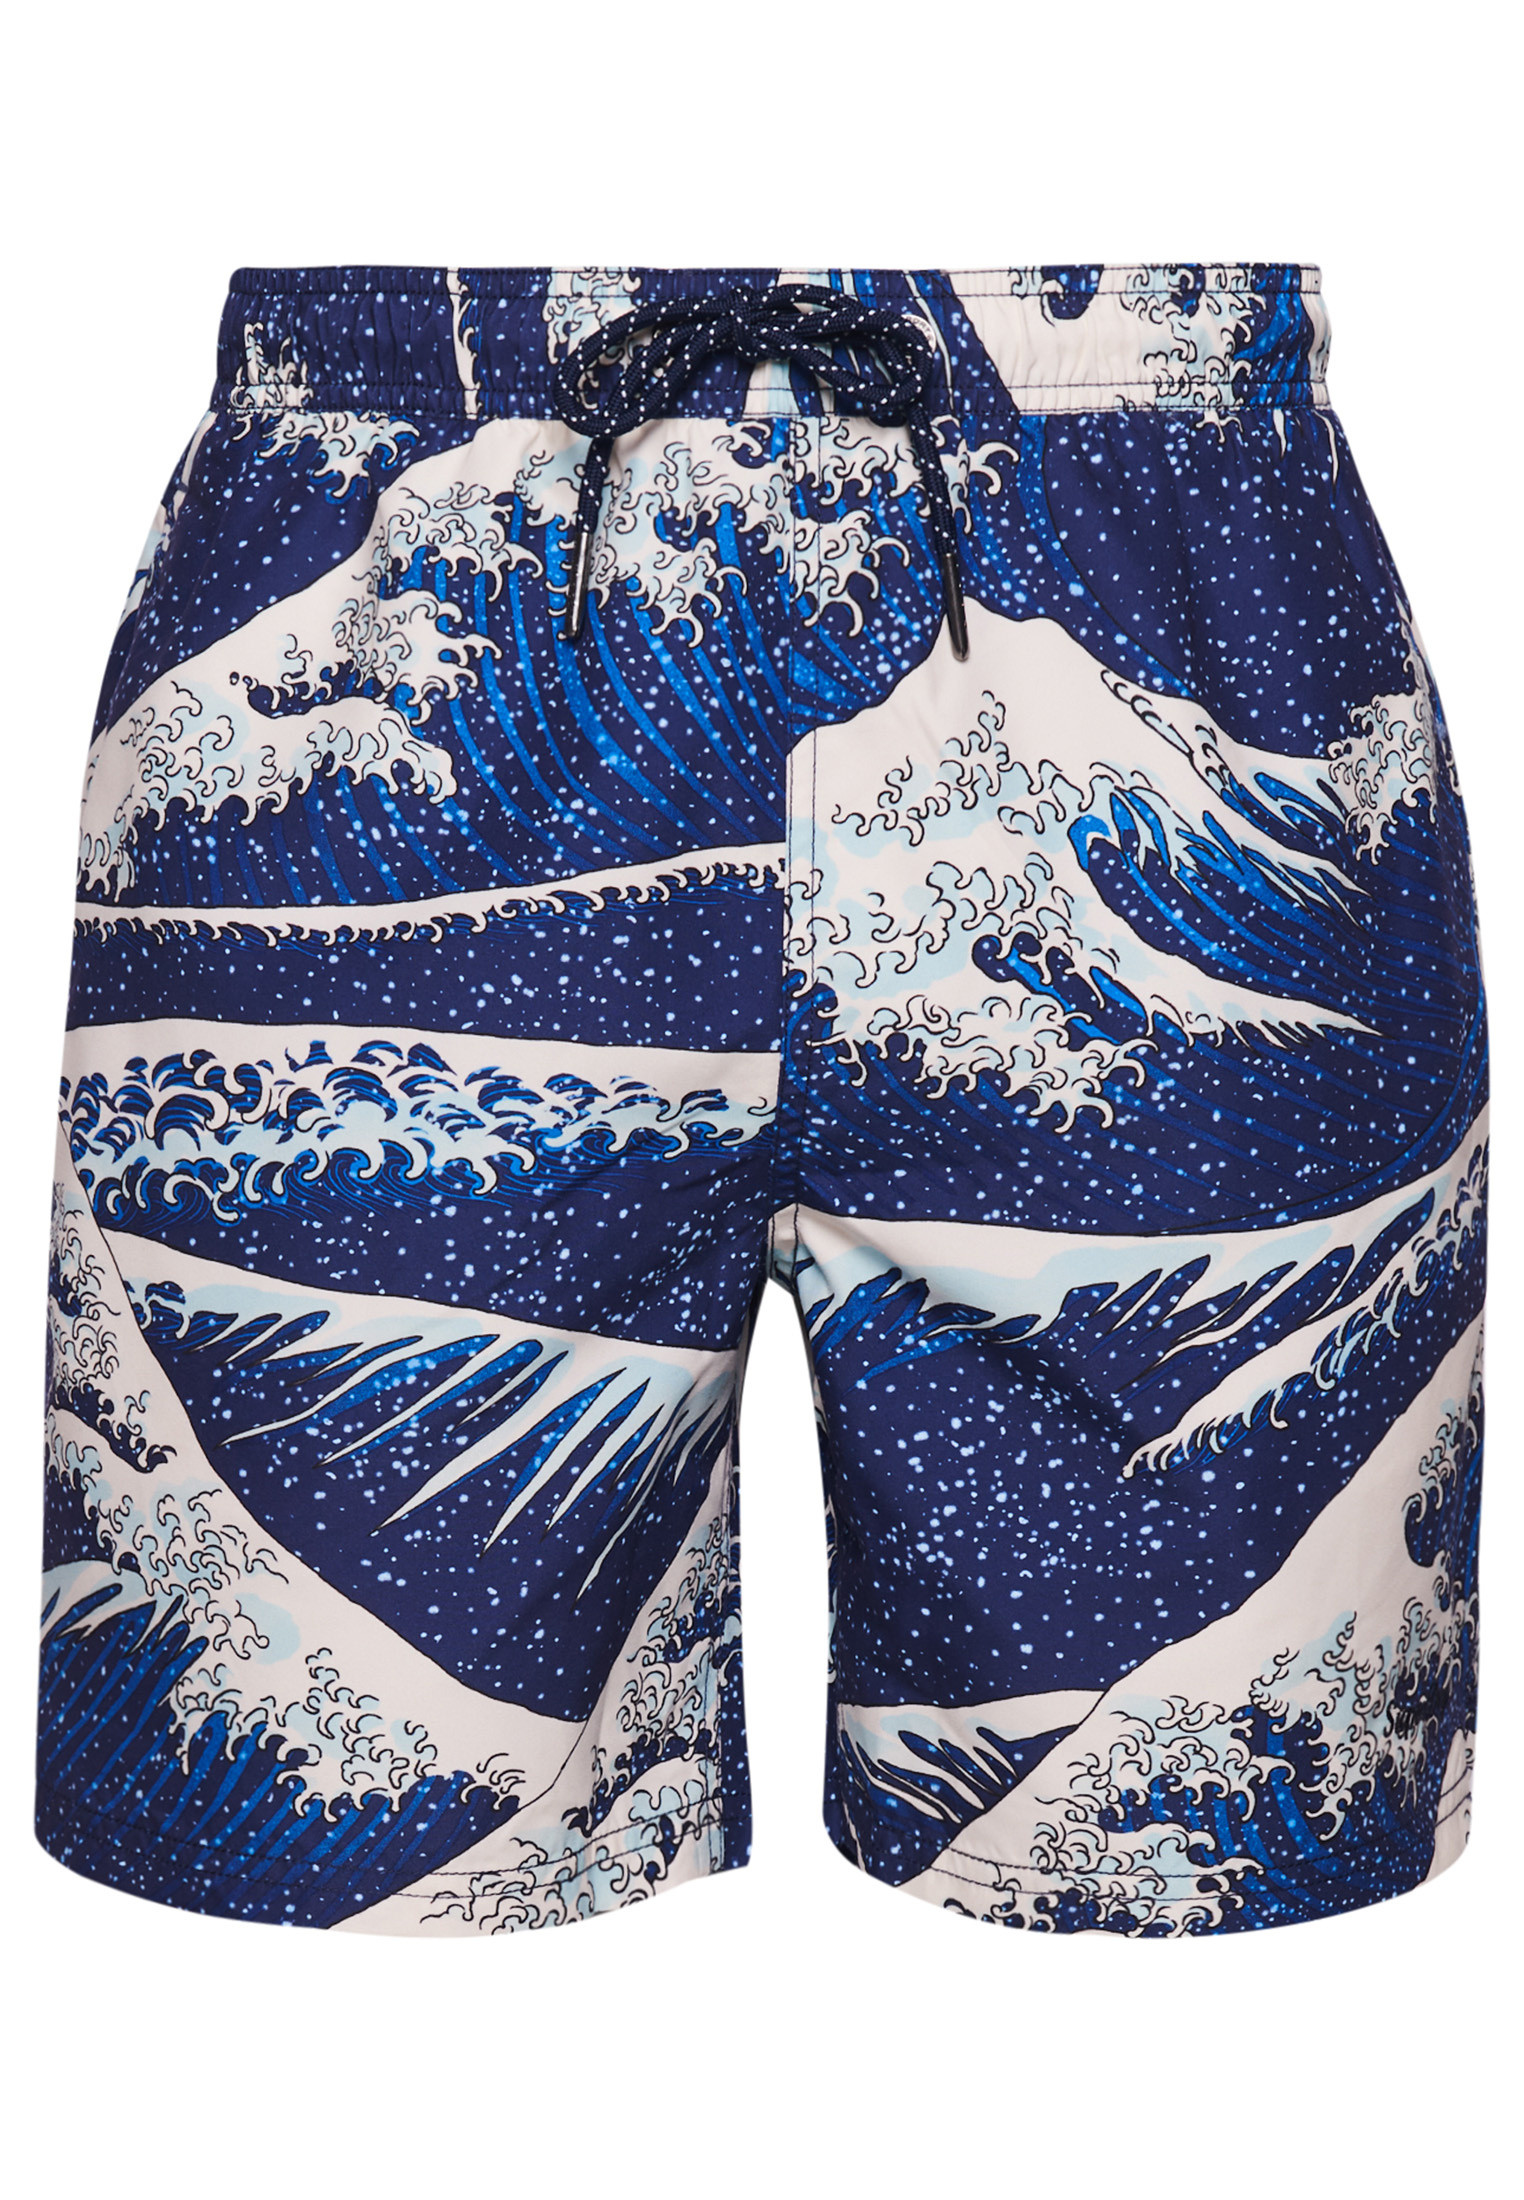 Superdry Sea Wave Print Boxer Trunks, Royal Blue, large image number 0